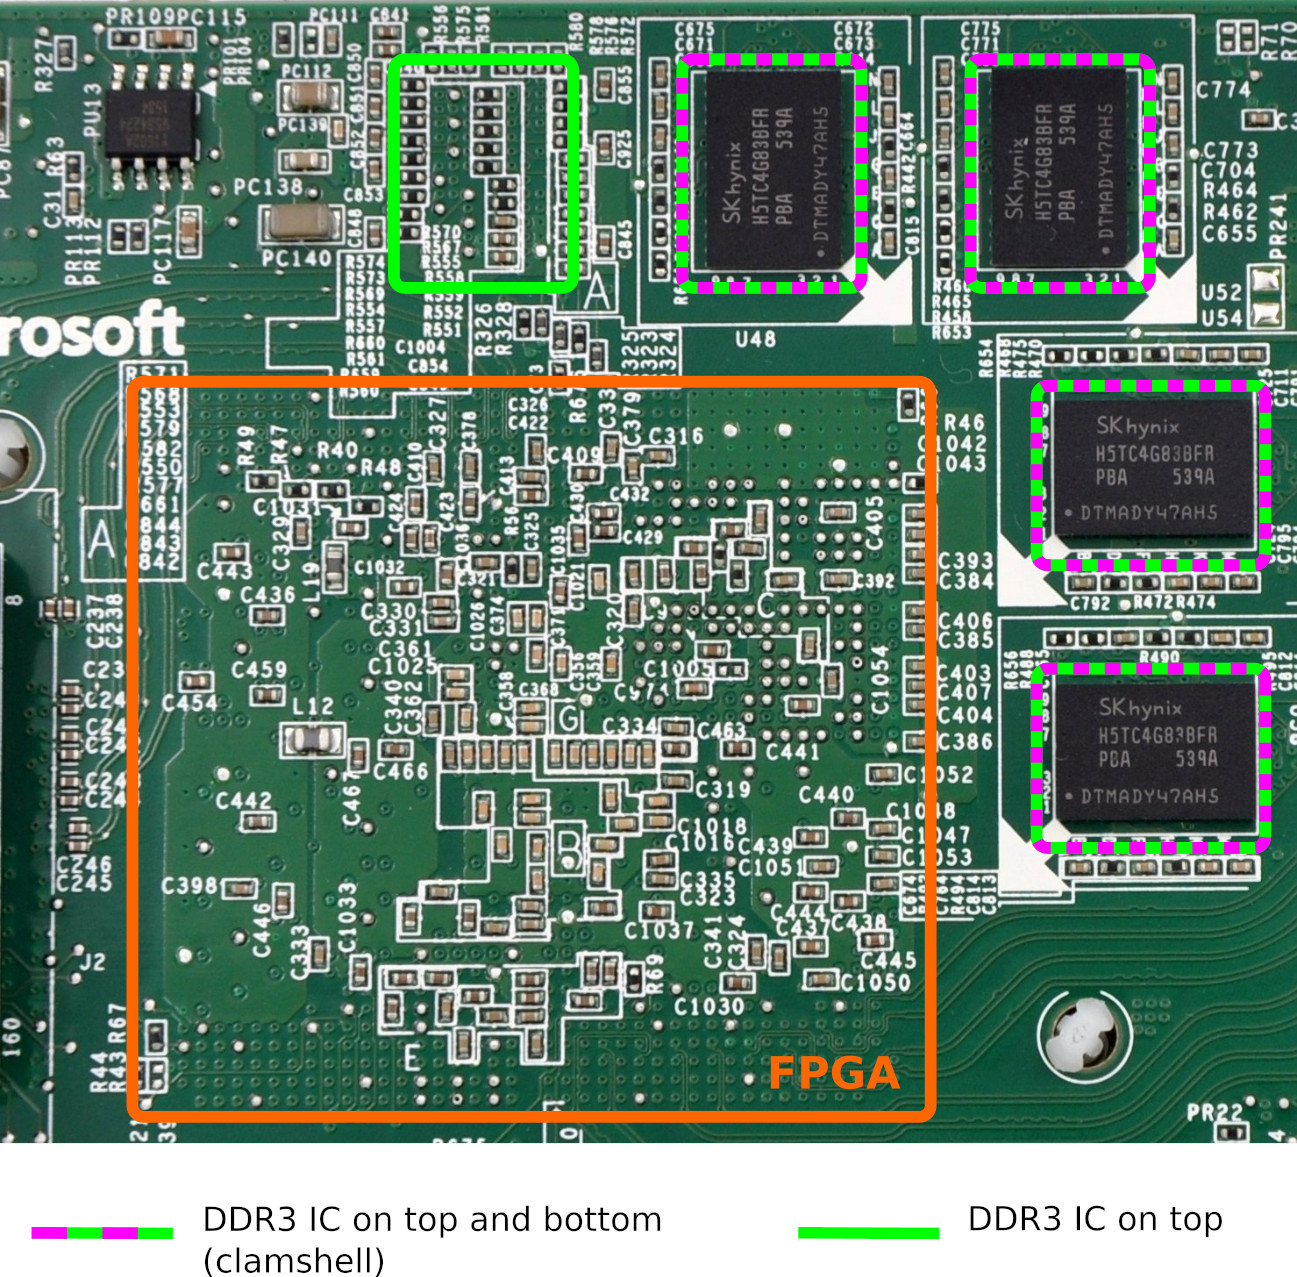 FPGA and 9 DDR3 ICs